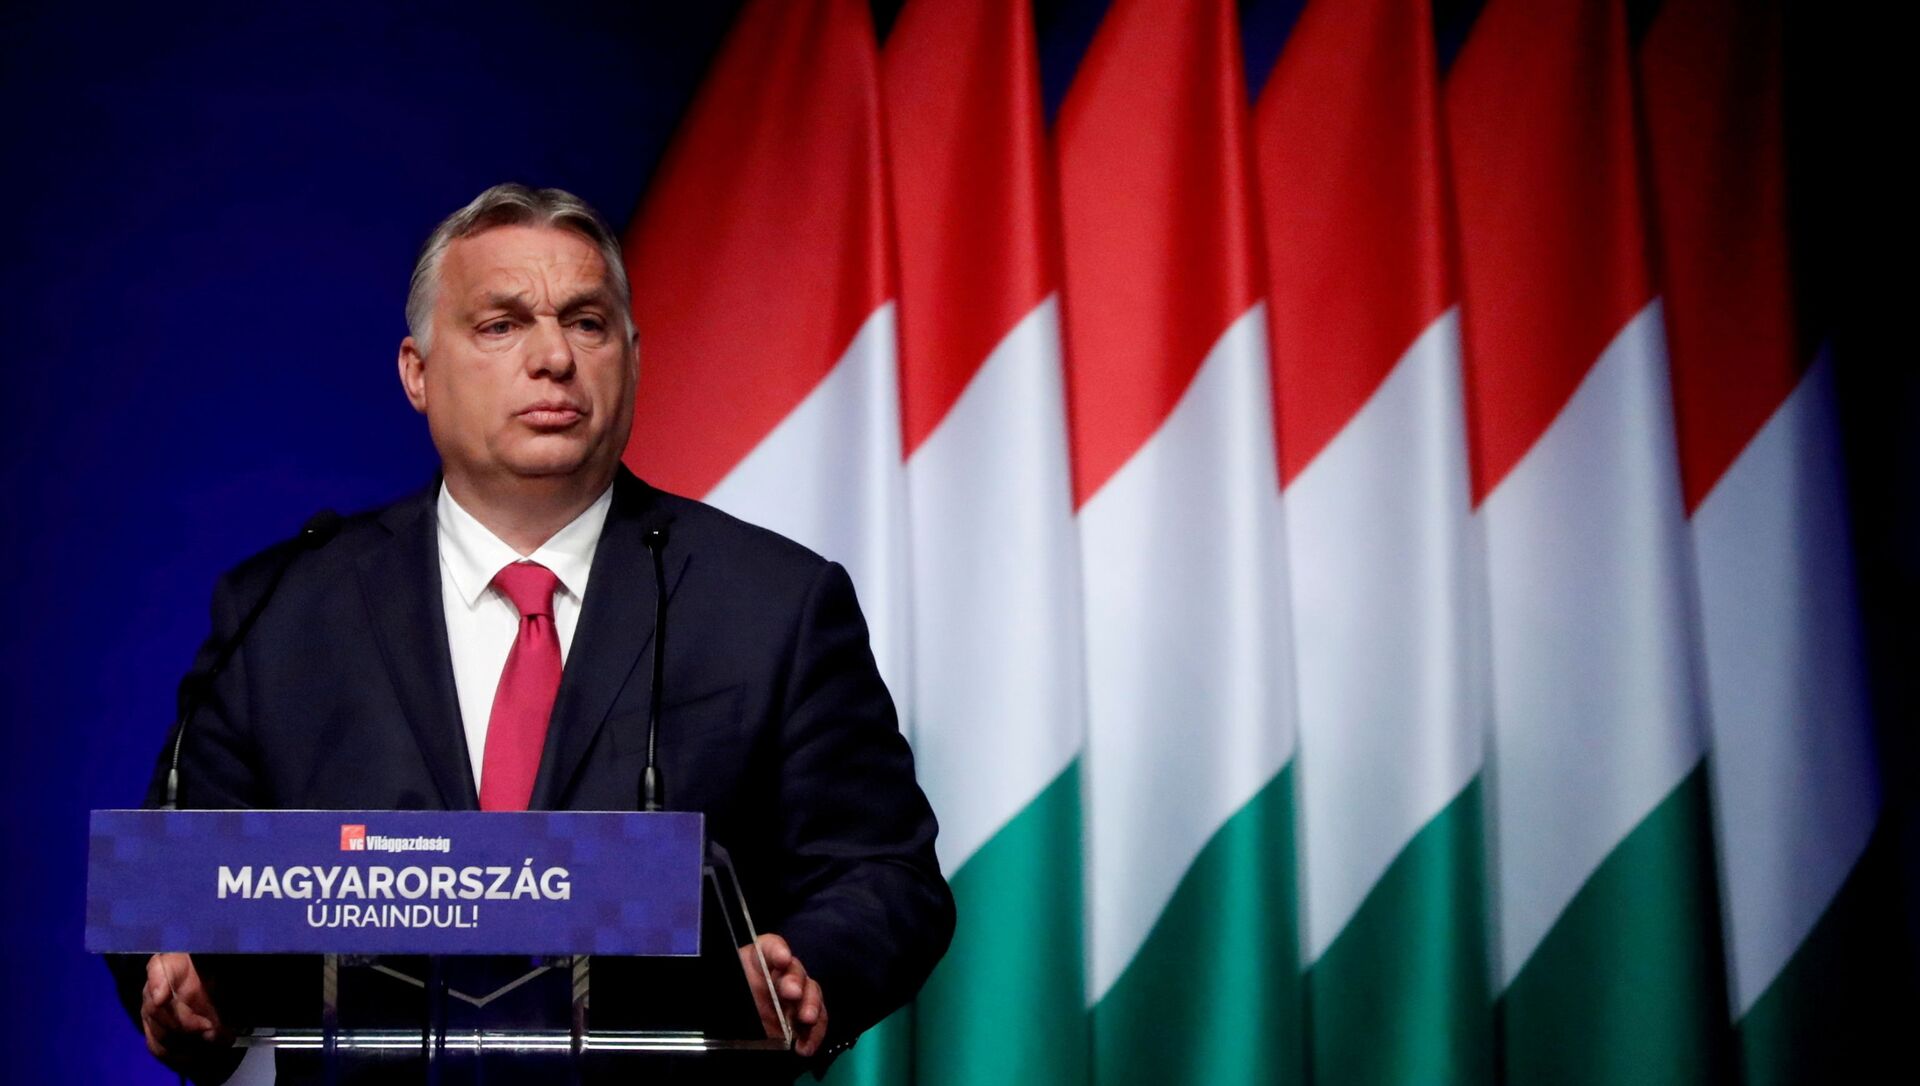 Viktor Orban à Budapest en juin 2021 - Sputnik Afrique, 1920, 09.08.2021